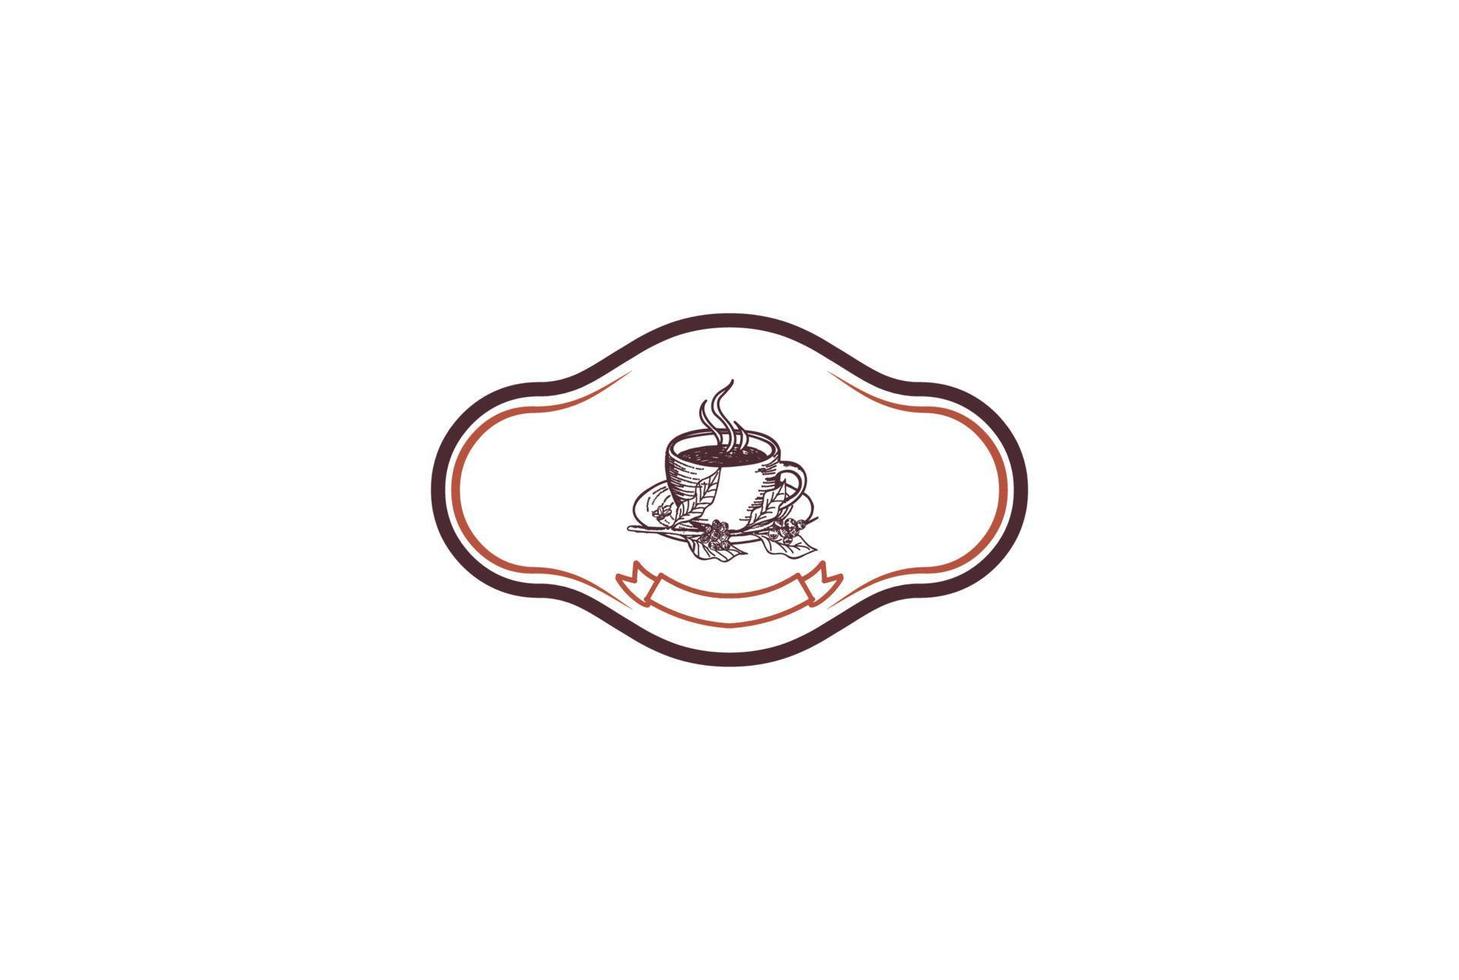 tazza di caffè vintage retrò per ristorante caffetteria o vettore di progettazione del logo dell'etichetta del prodotto